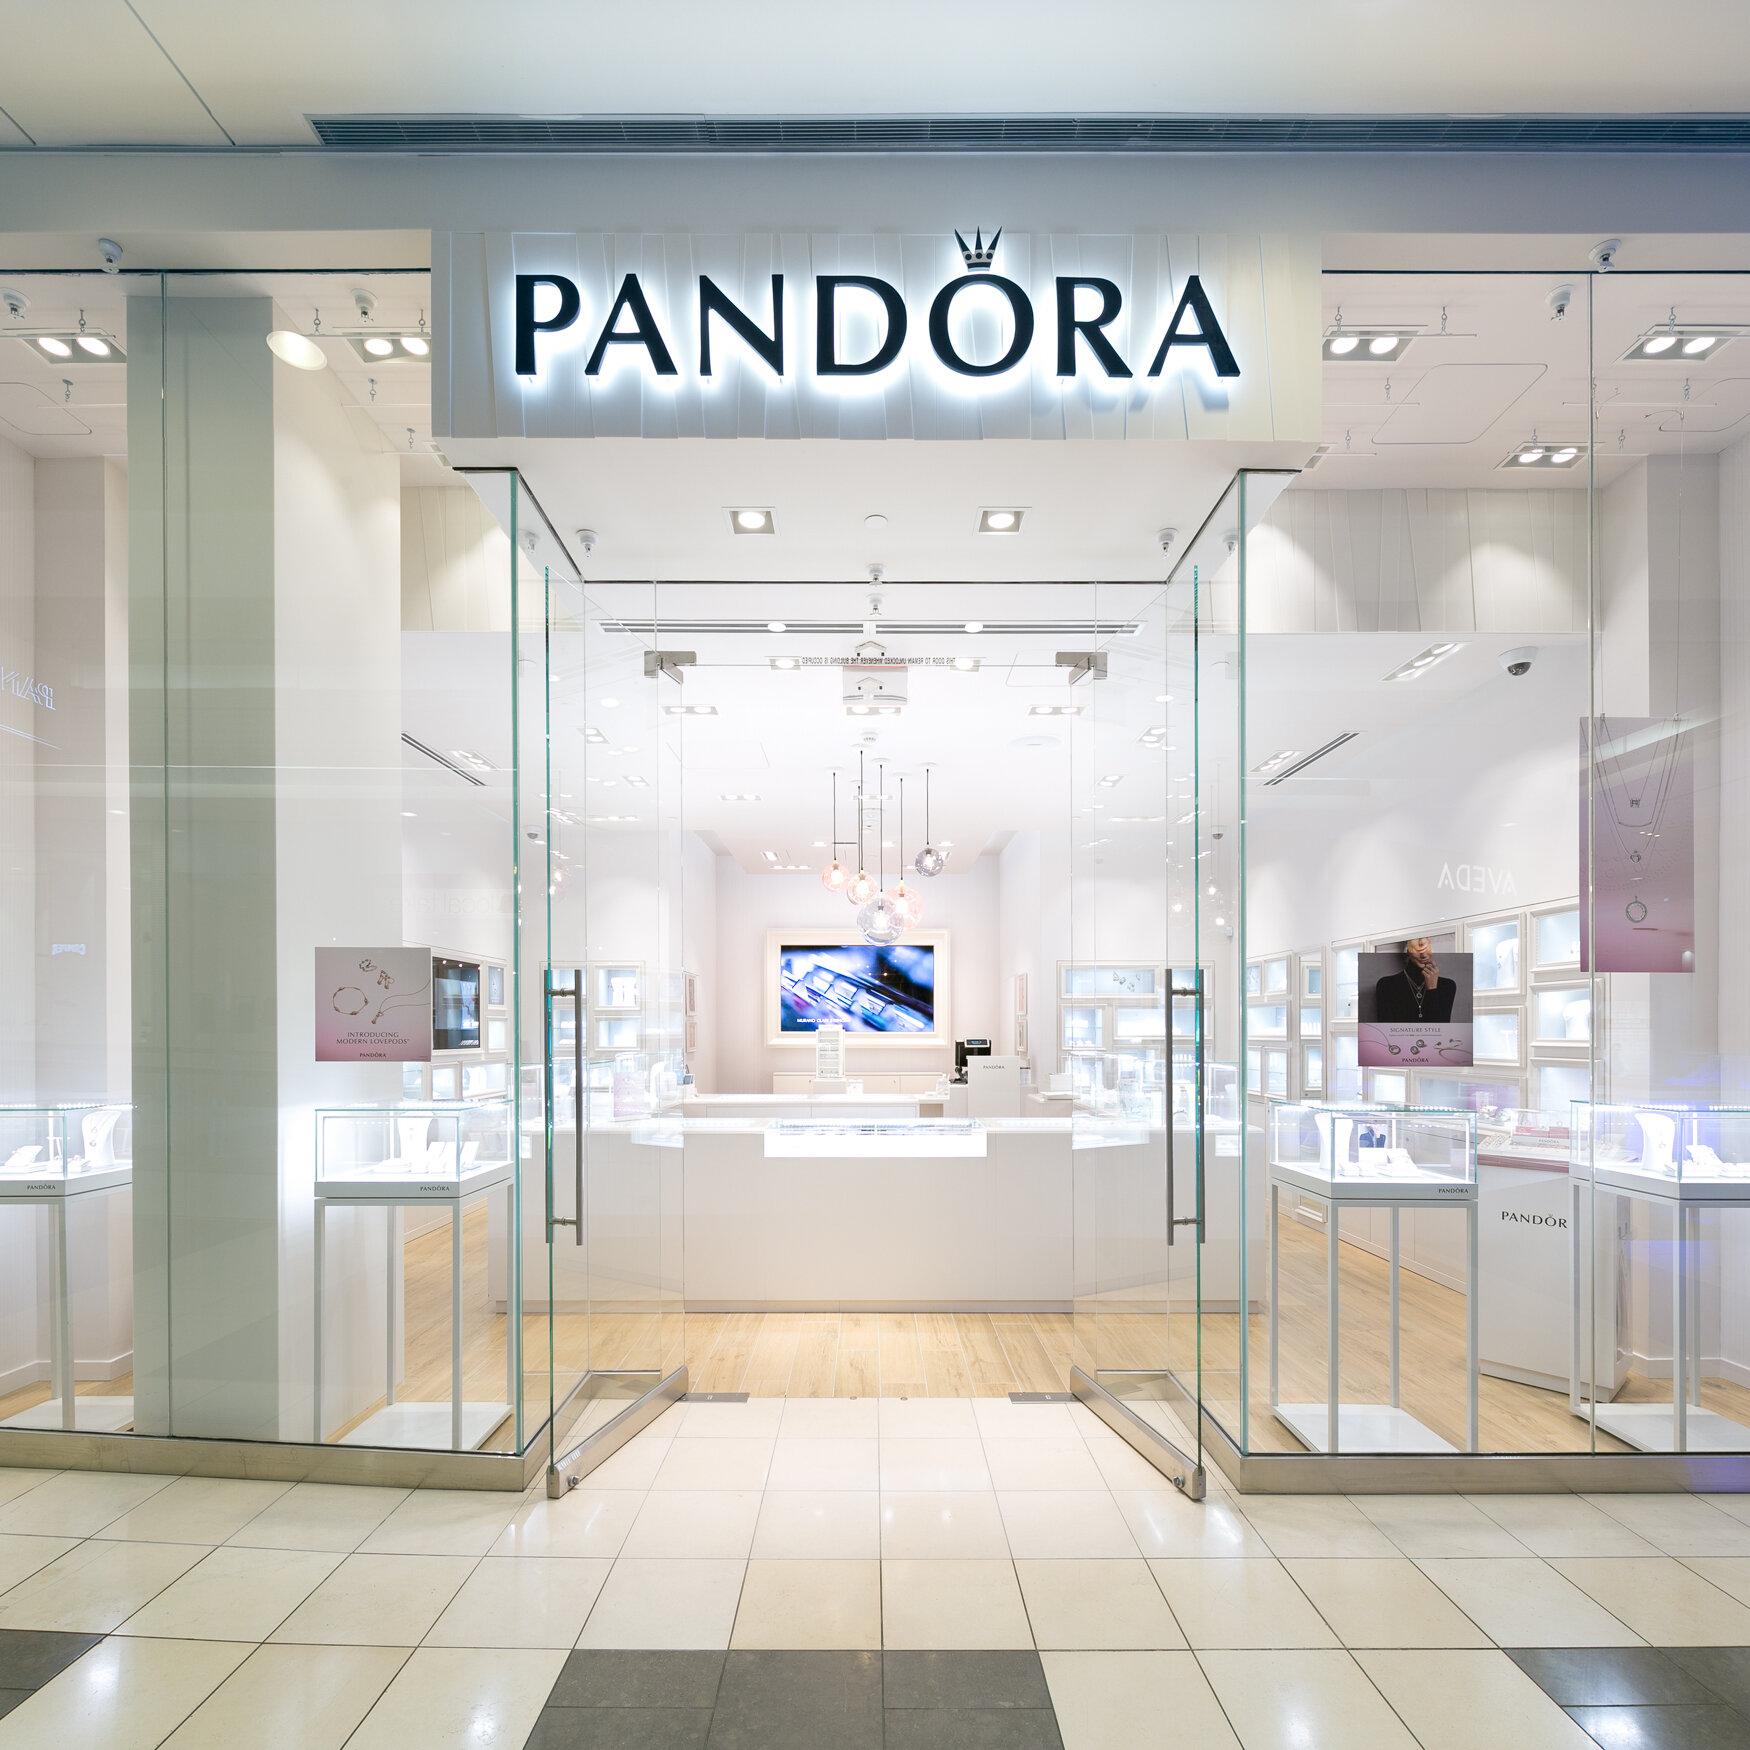 Pandora retail interiors by brightroomSF Interior photograohy-4.jpg